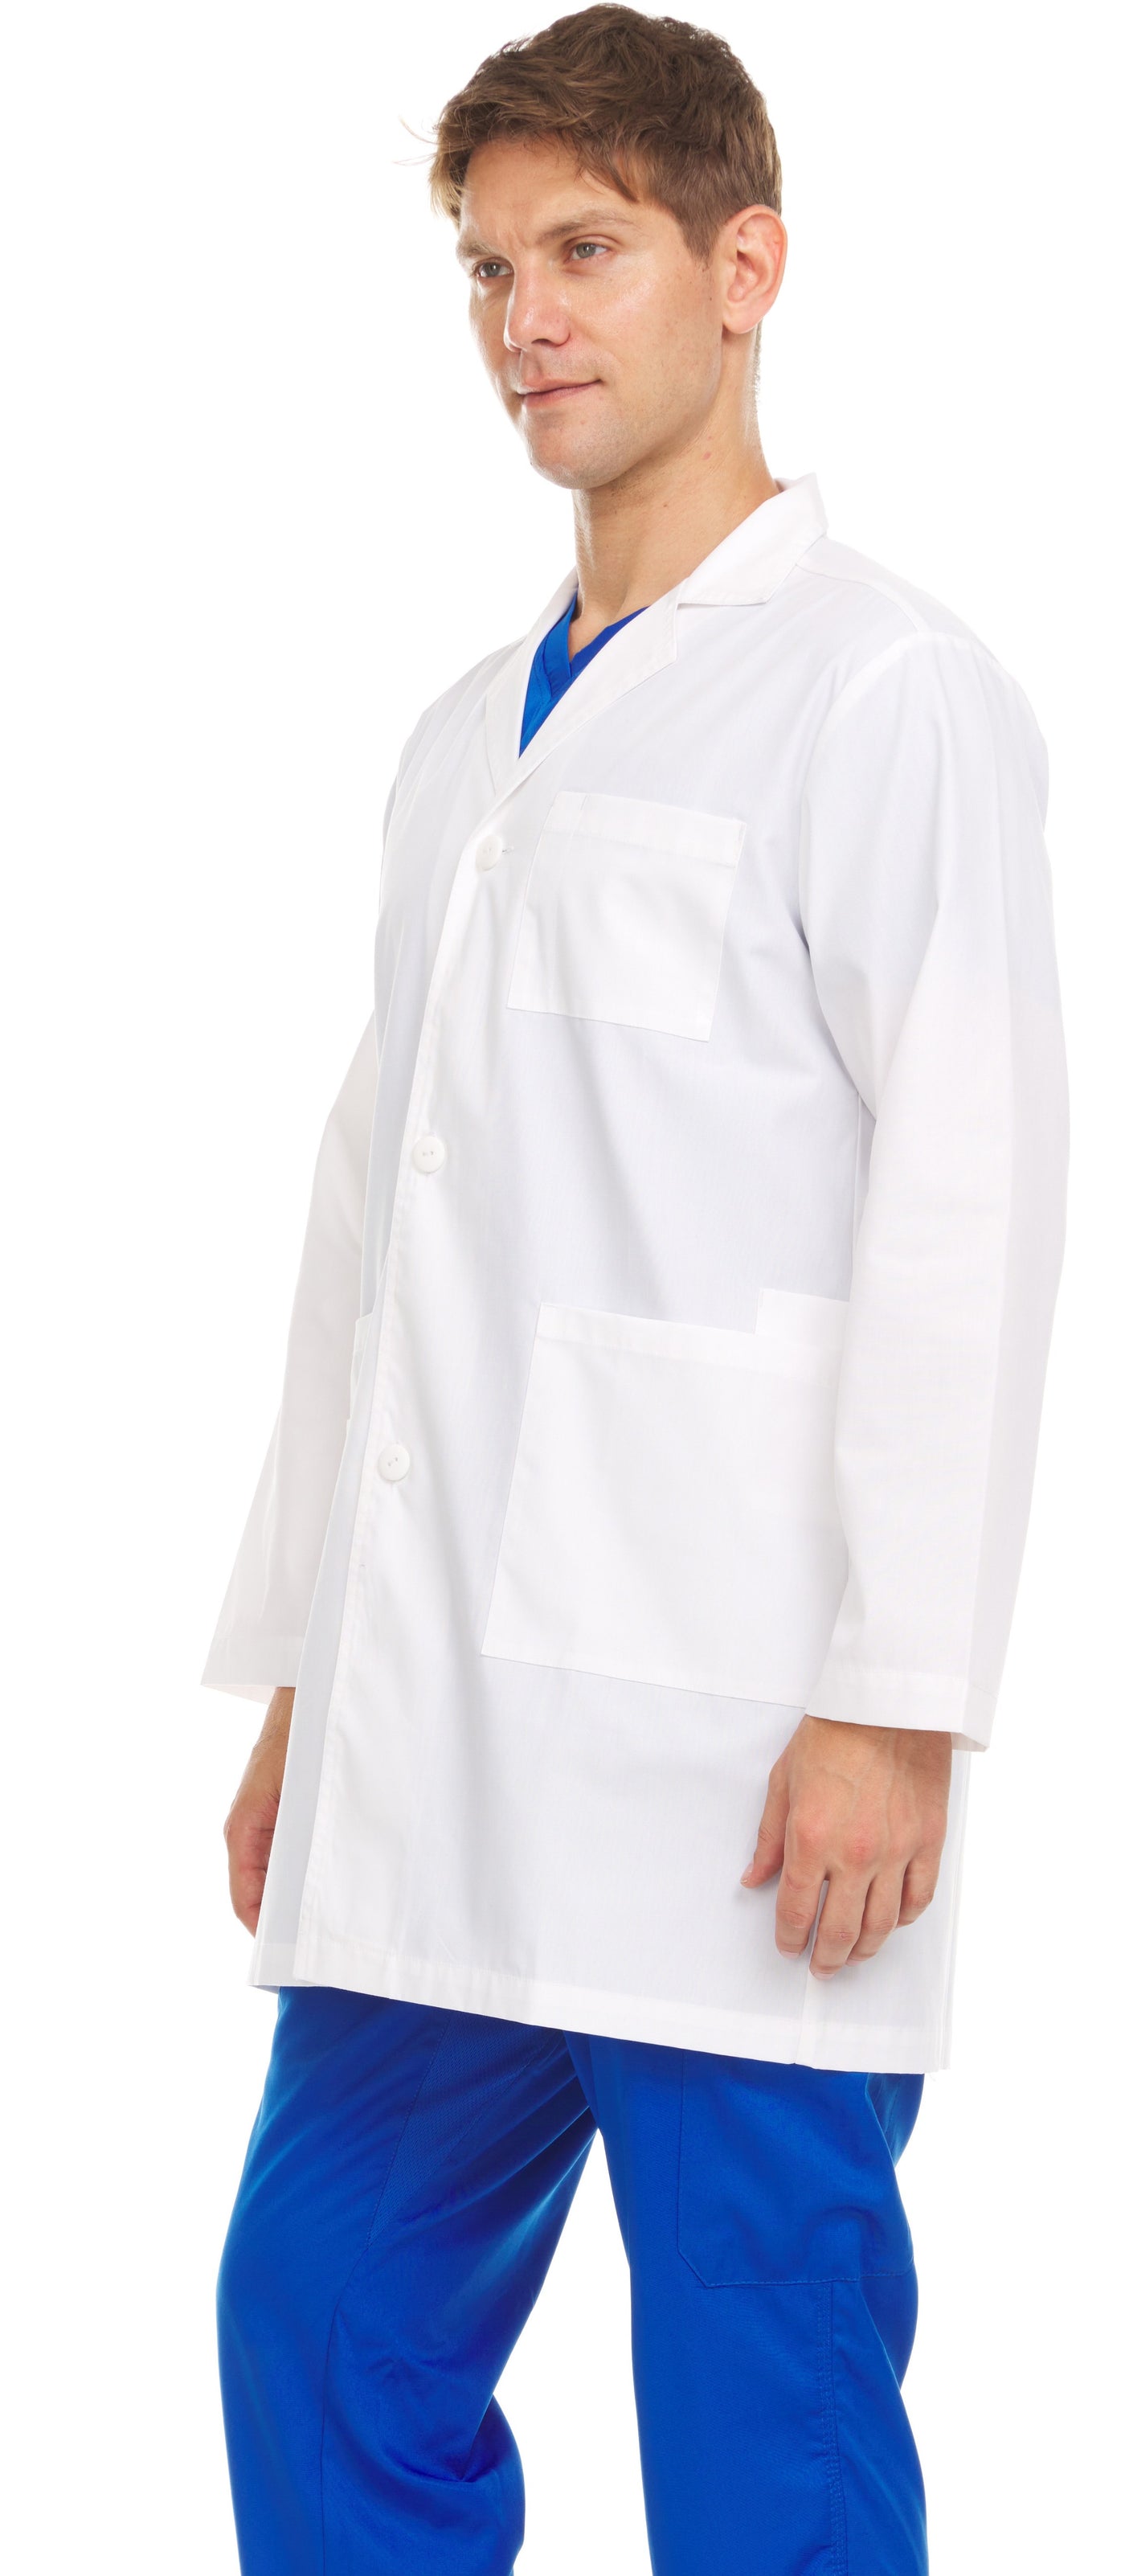 Avery - MediLab Unisex Lab Coat By MediChic XS-3X / White